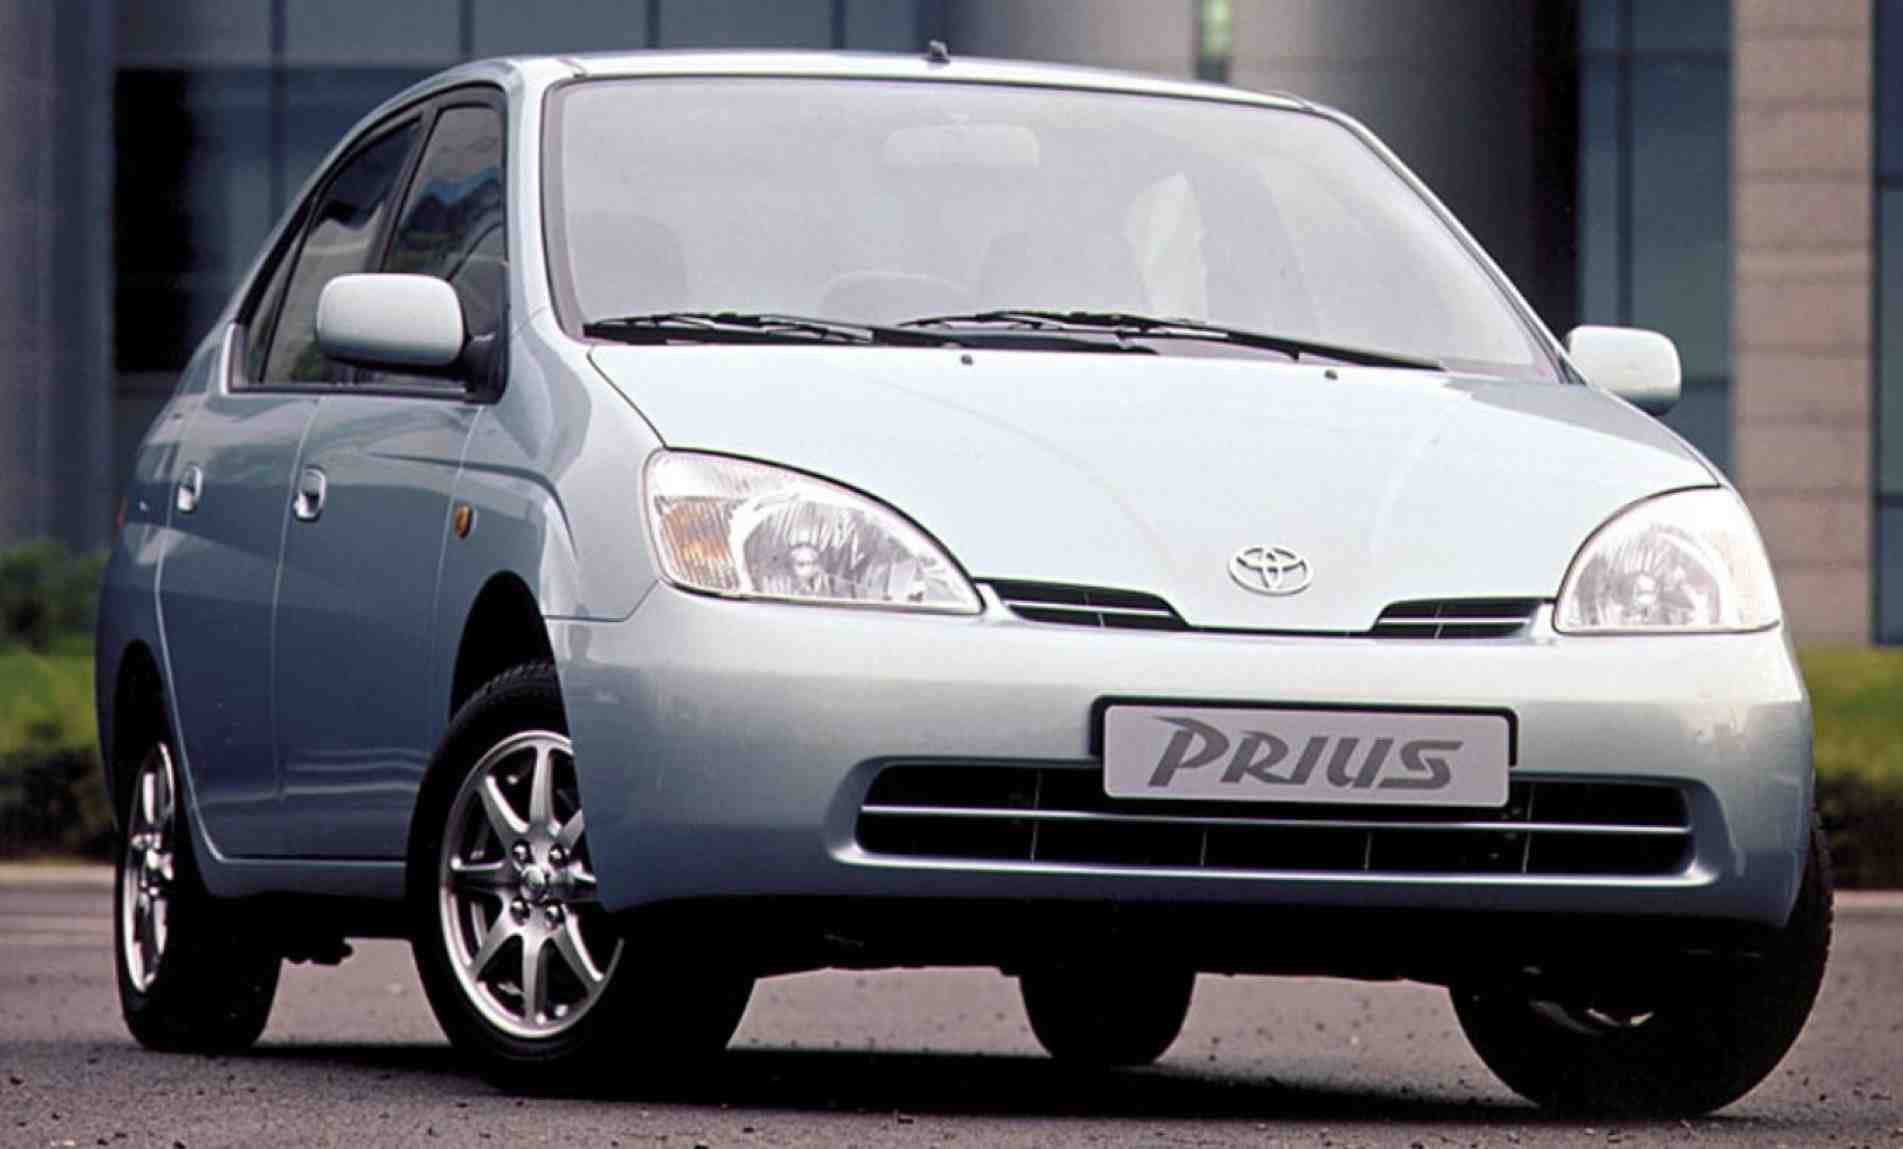 Criado pela Toyota em 1997, o Prius, primeiro híbrido dos tempos modernos, já indicava que o futuro deveria mudar.